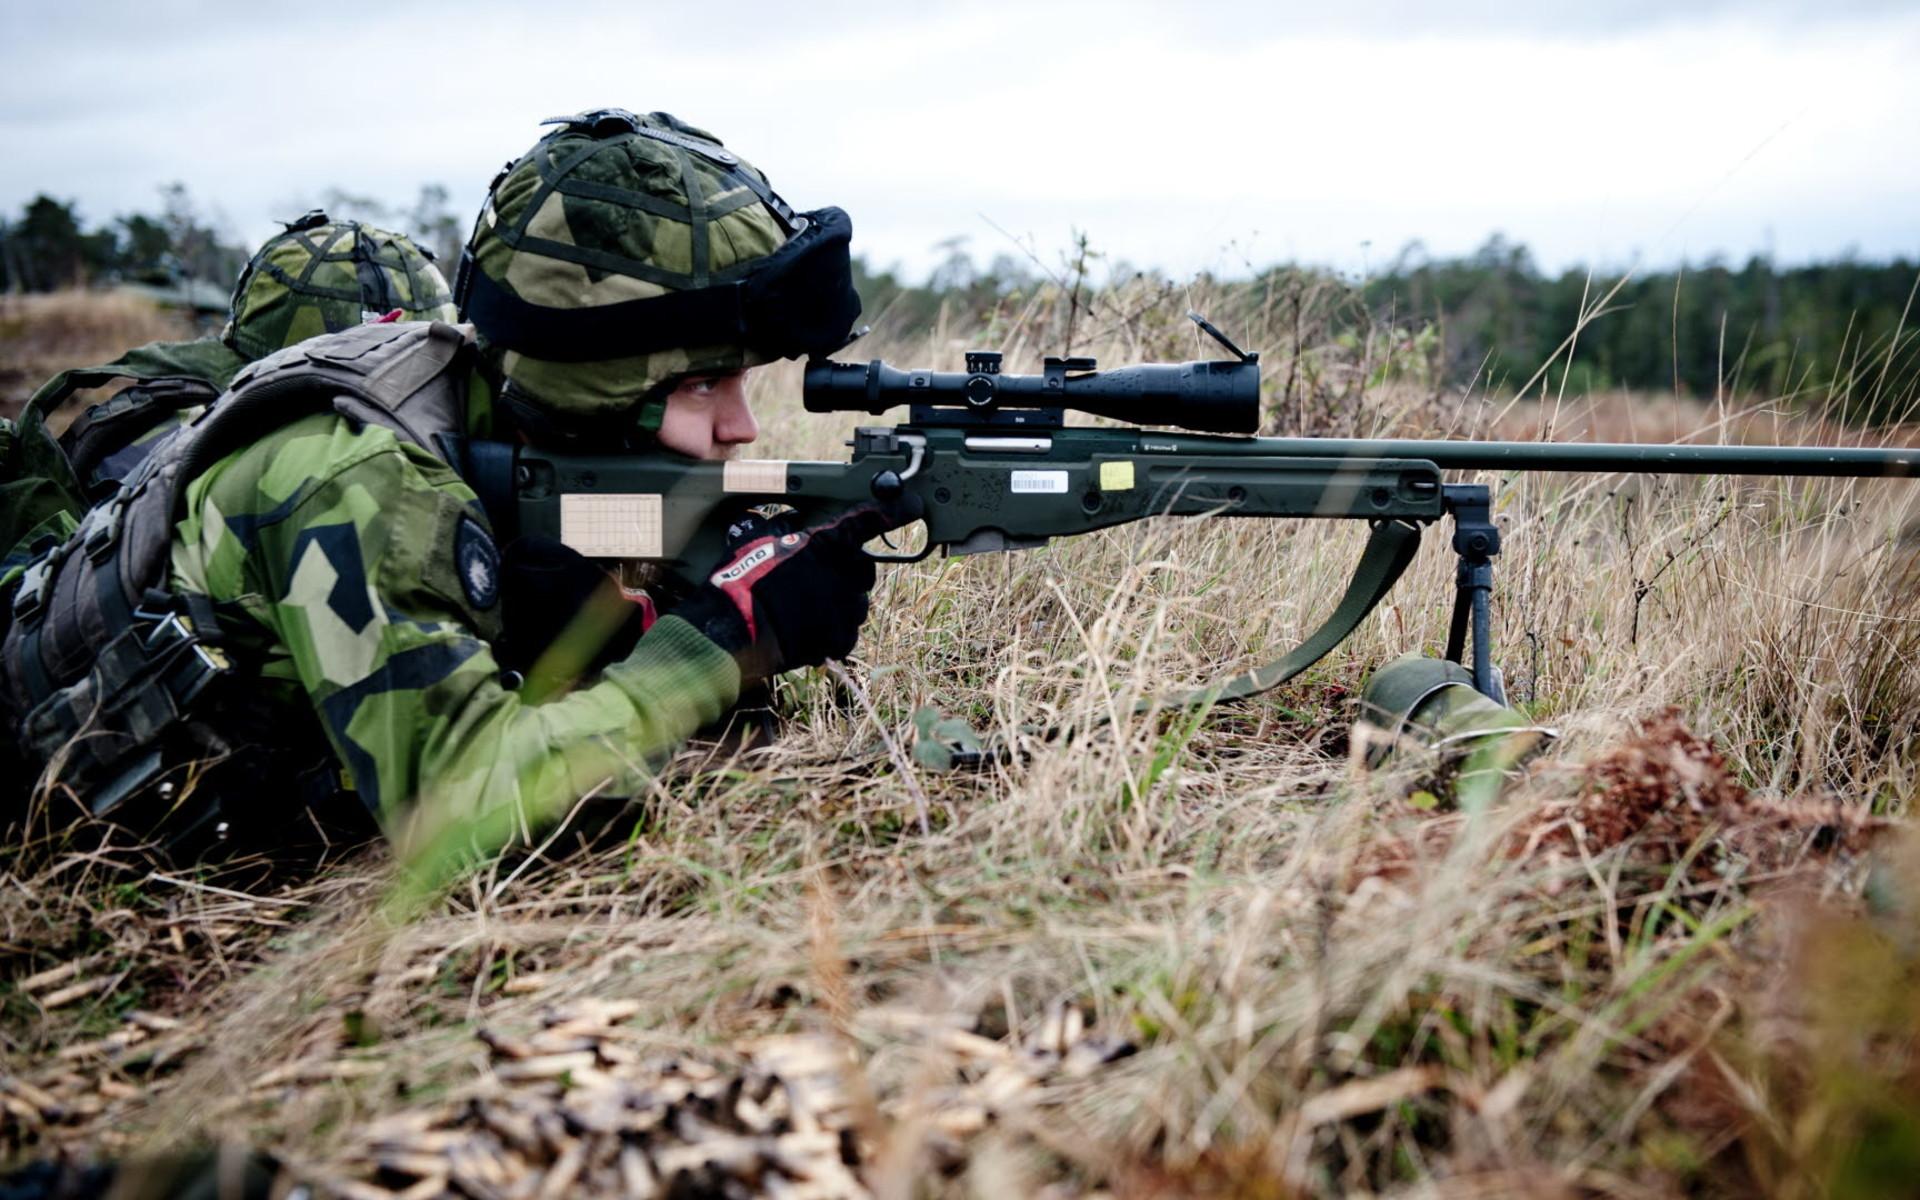 Prickskyttegevär 90 är en vidareutveckling av brittiska L96A1 och anses, enligt Försvarsmakten, som ett av världens bästa prickskyttegevär. Fungerar effektivt i temperaturer ned till minus 40 grader och har en effektiv räckvidd på cirka 800 meter. Magasinet rymmer tio patroner med en kaliber på 7,62 mm.